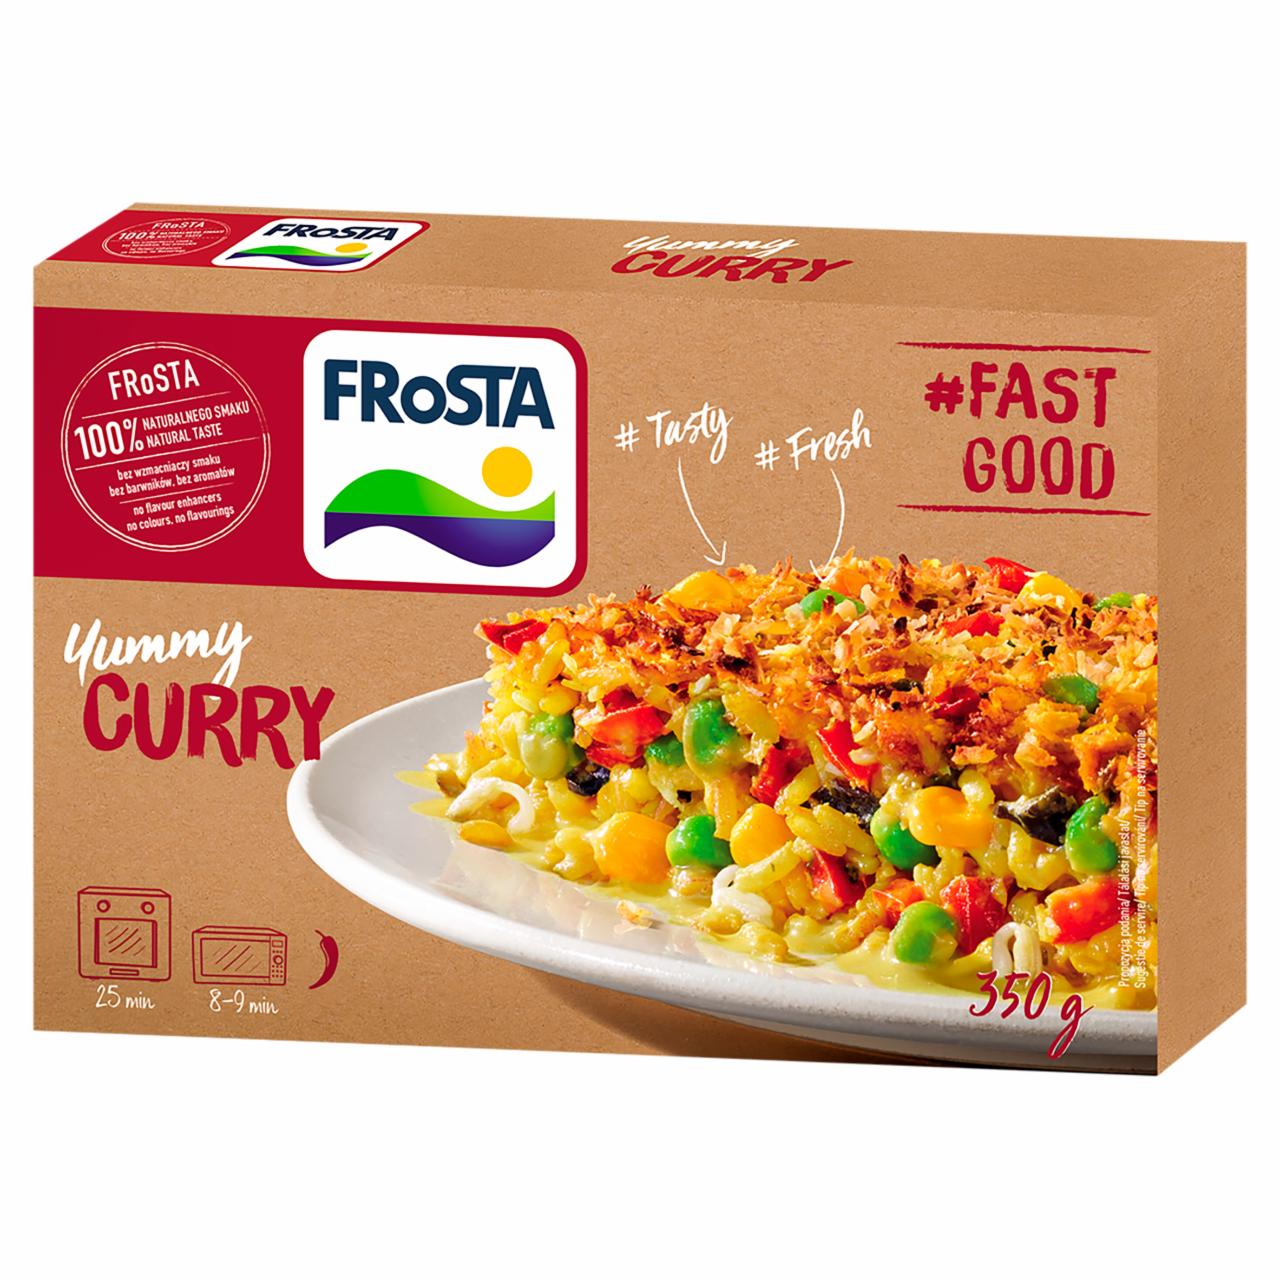 Képek - FRoSTA gyorsfagyasztott curry 350 g